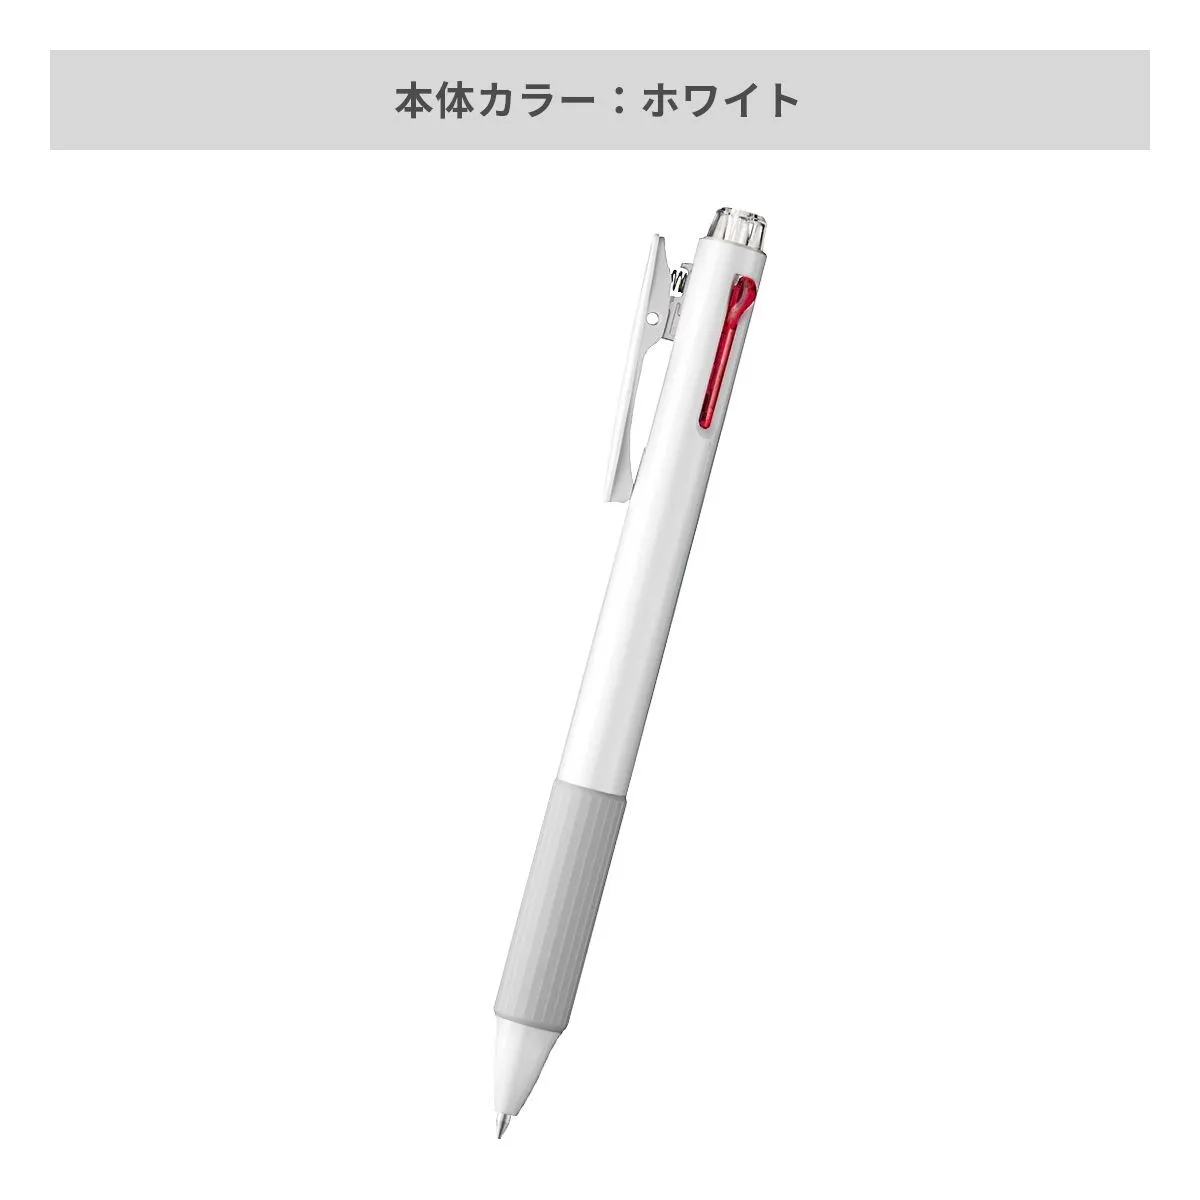 ぺんてる ビクーニャフィール3色ボールペン 0.7mm【名入れボールペン / パッド印刷】 画像4